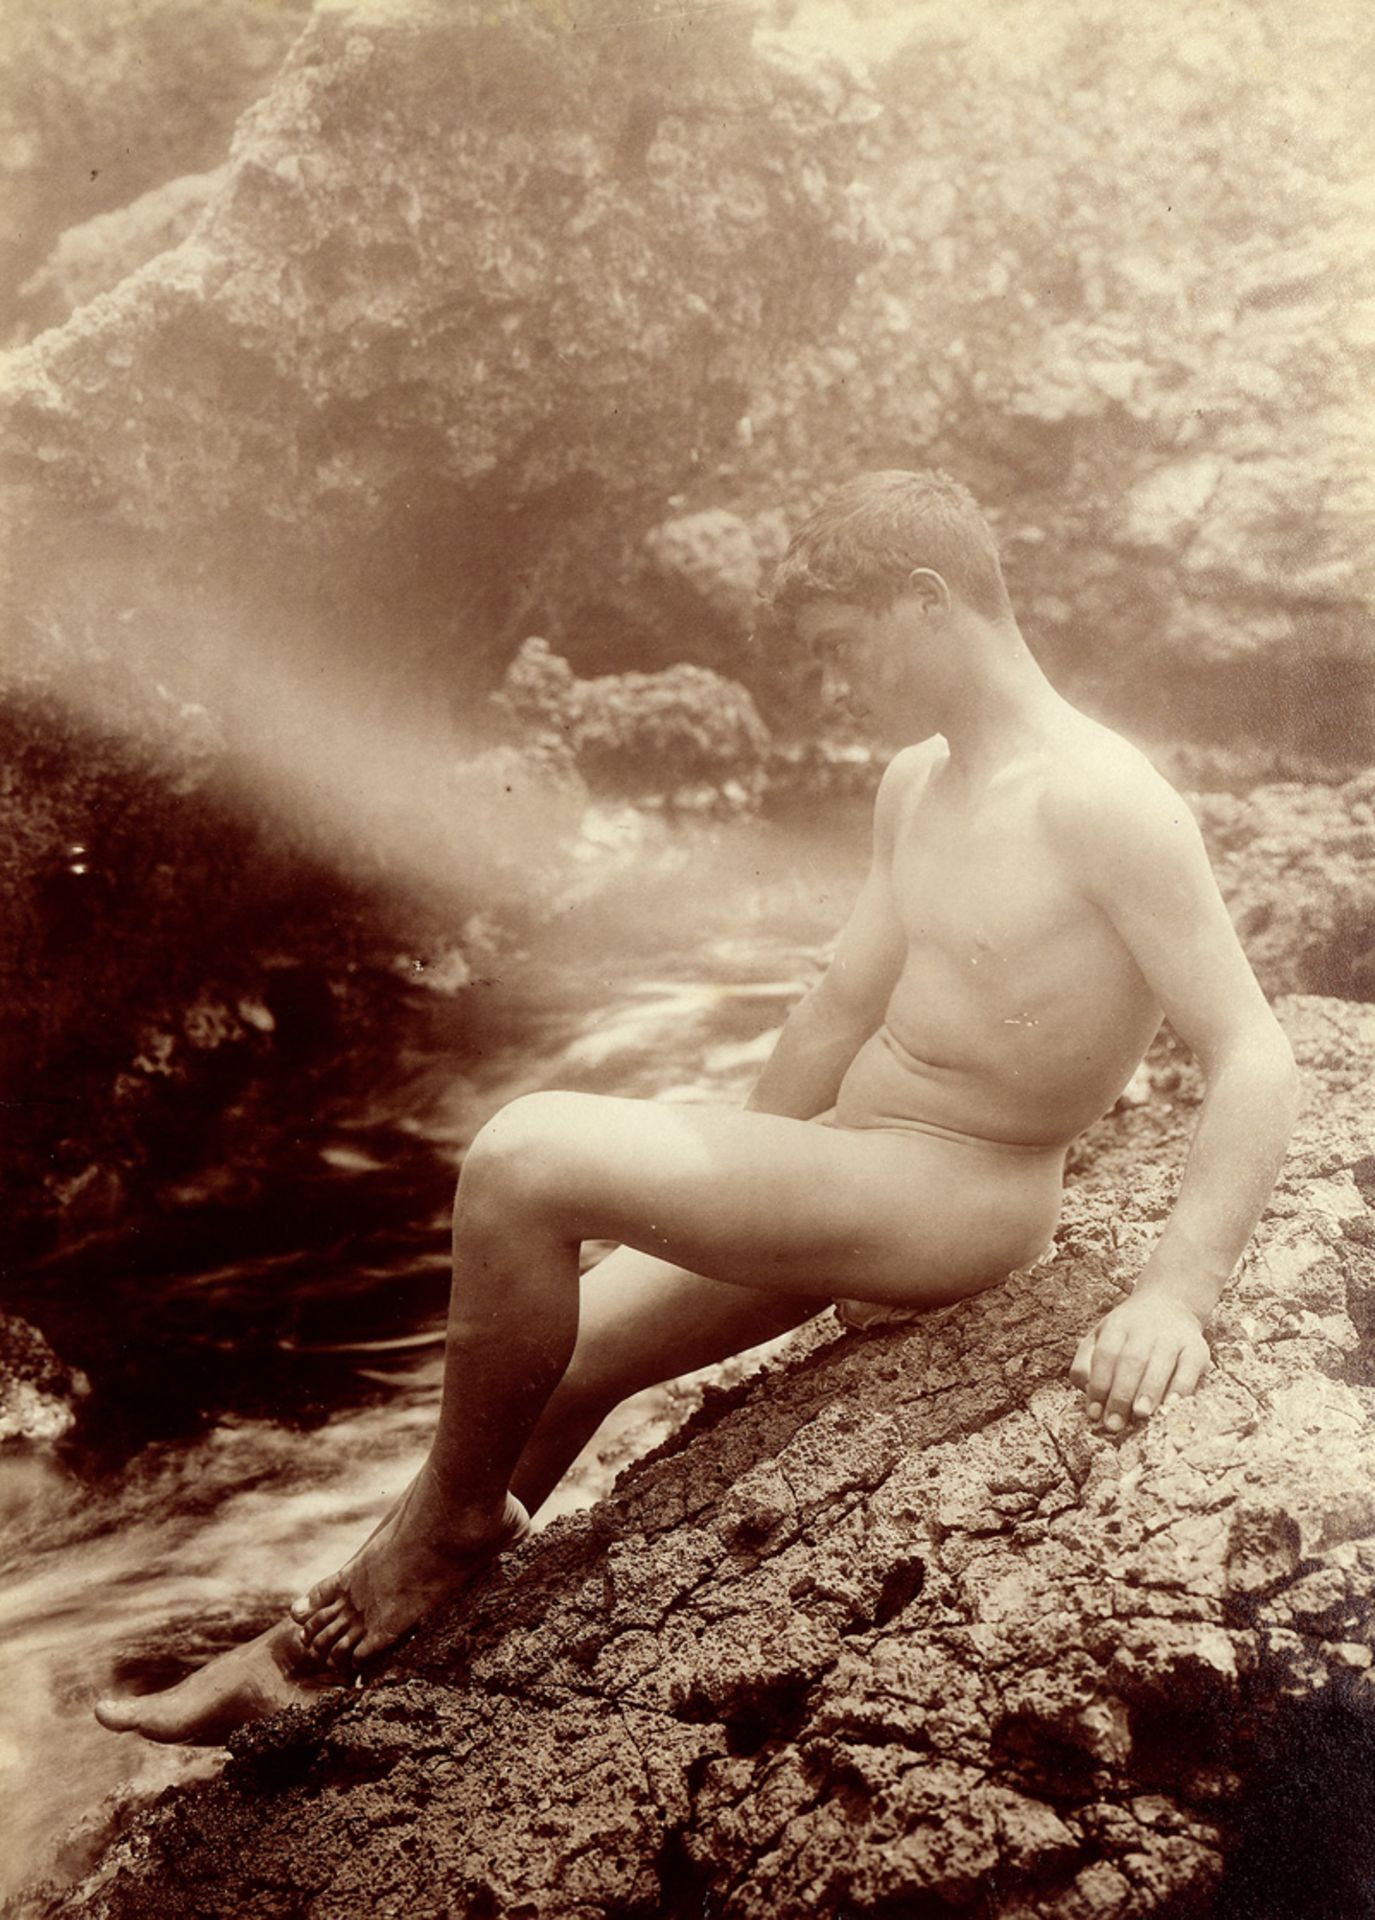 Gloeden, Wilhelm von: Male nude on rocks by the sea